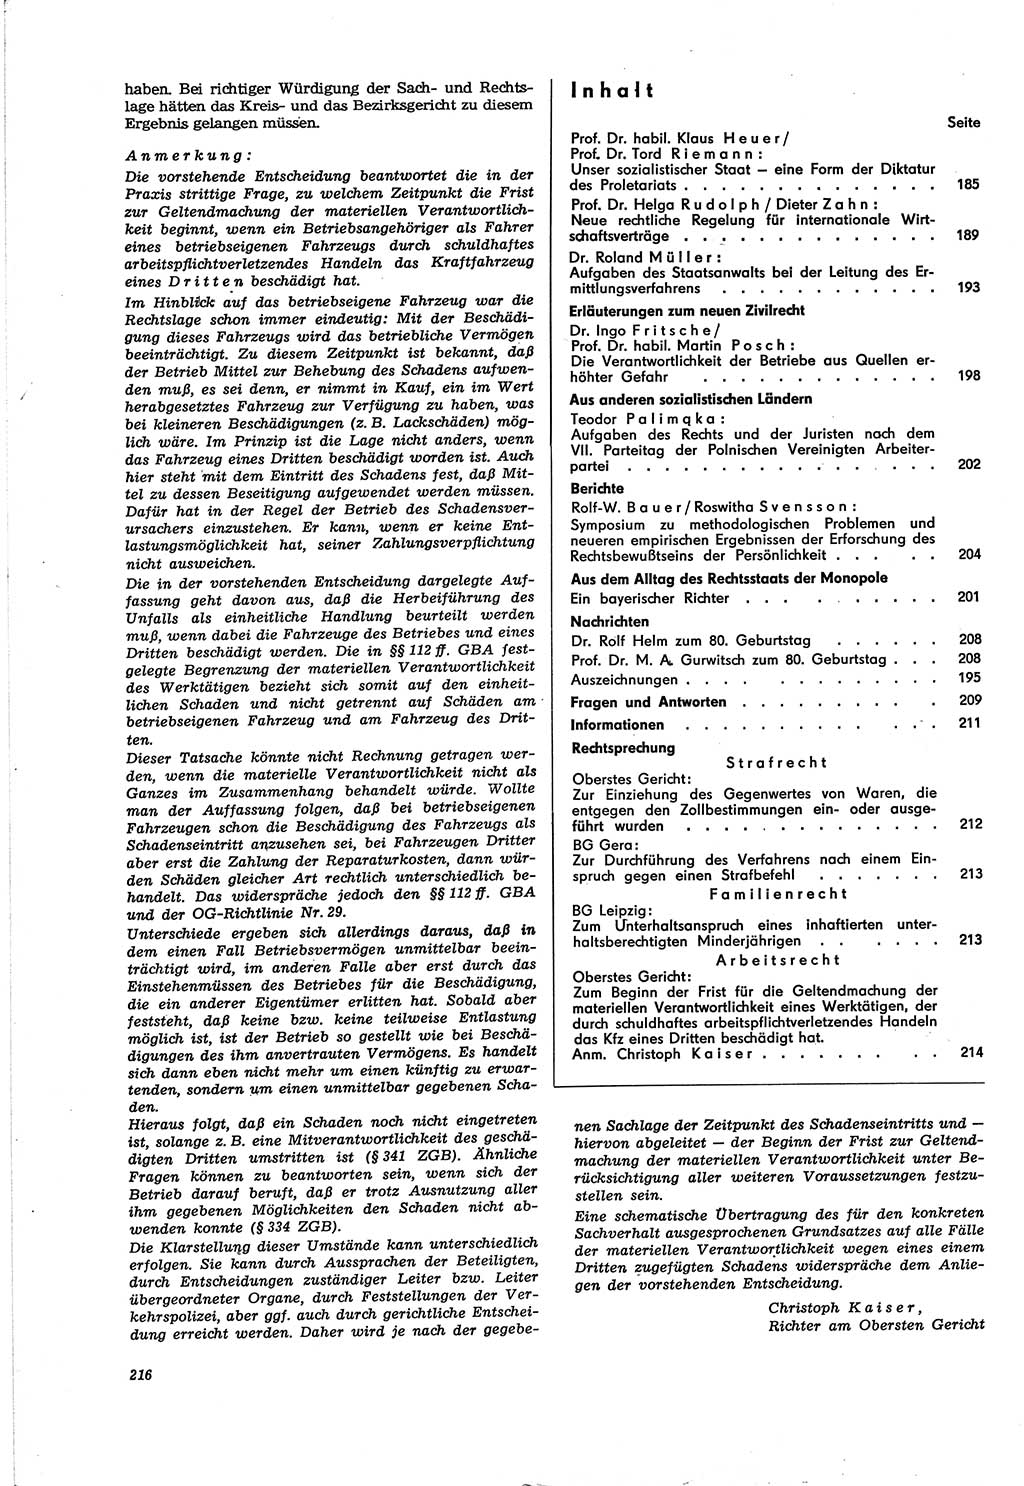 Neue Justiz (NJ), Zeitschrift für Recht und Rechtswissenschaft [Deutsche Demokratische Republik (DDR)], 30. Jahrgang 1976, Seite 216 (NJ DDR 1976, S. 216)